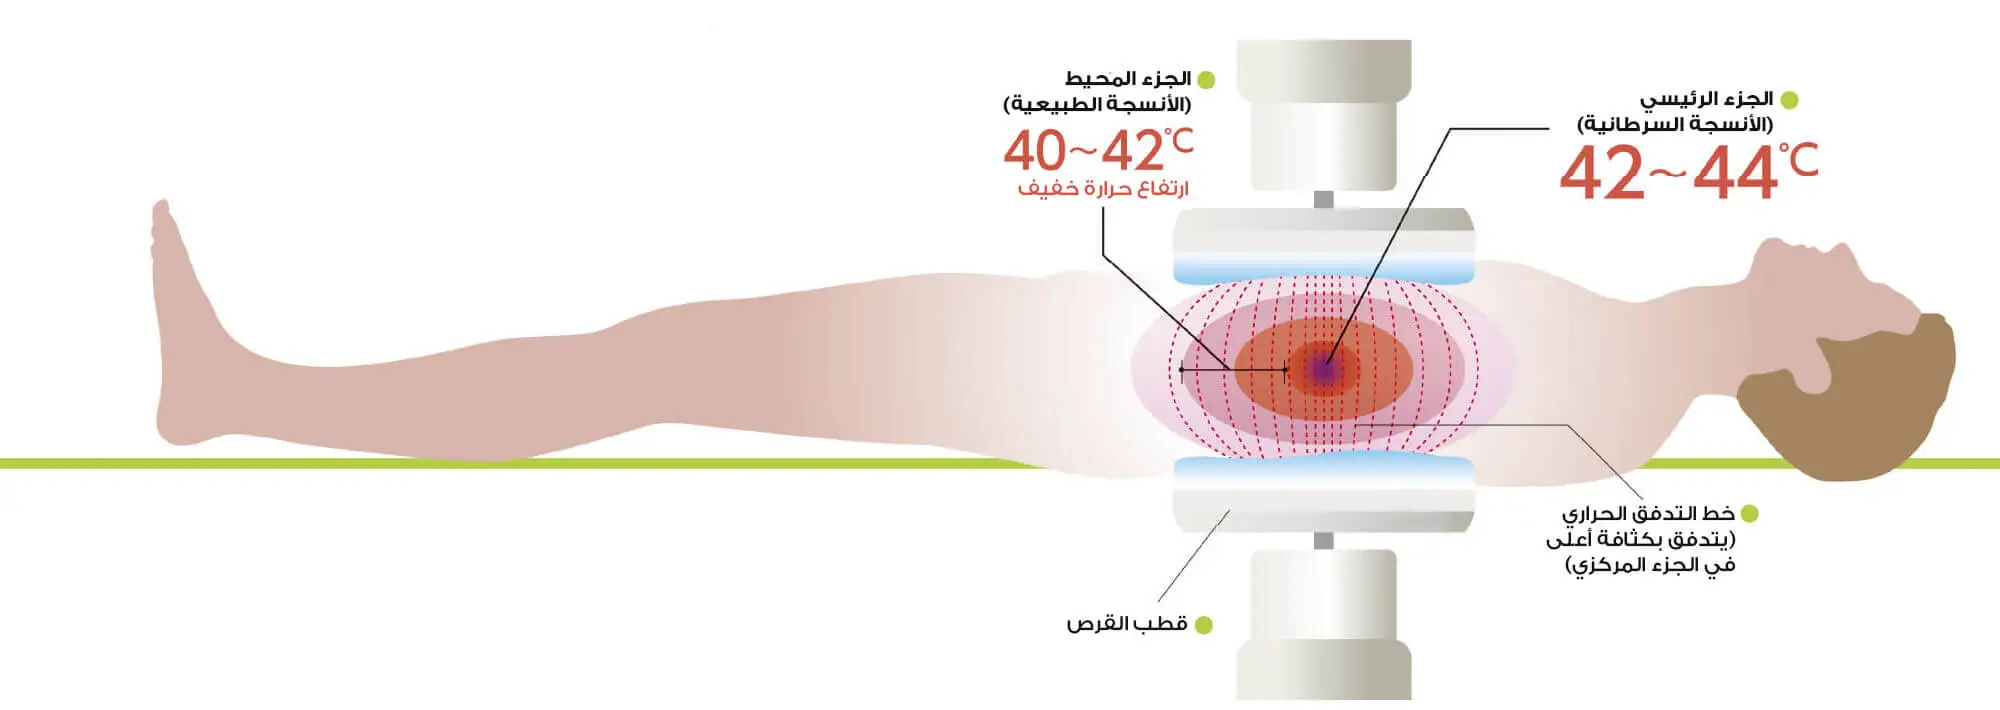 Kanser ısı tedavisinin etki mekanizmasının bir resmi ve ısıyı tümör alanına odaklamak